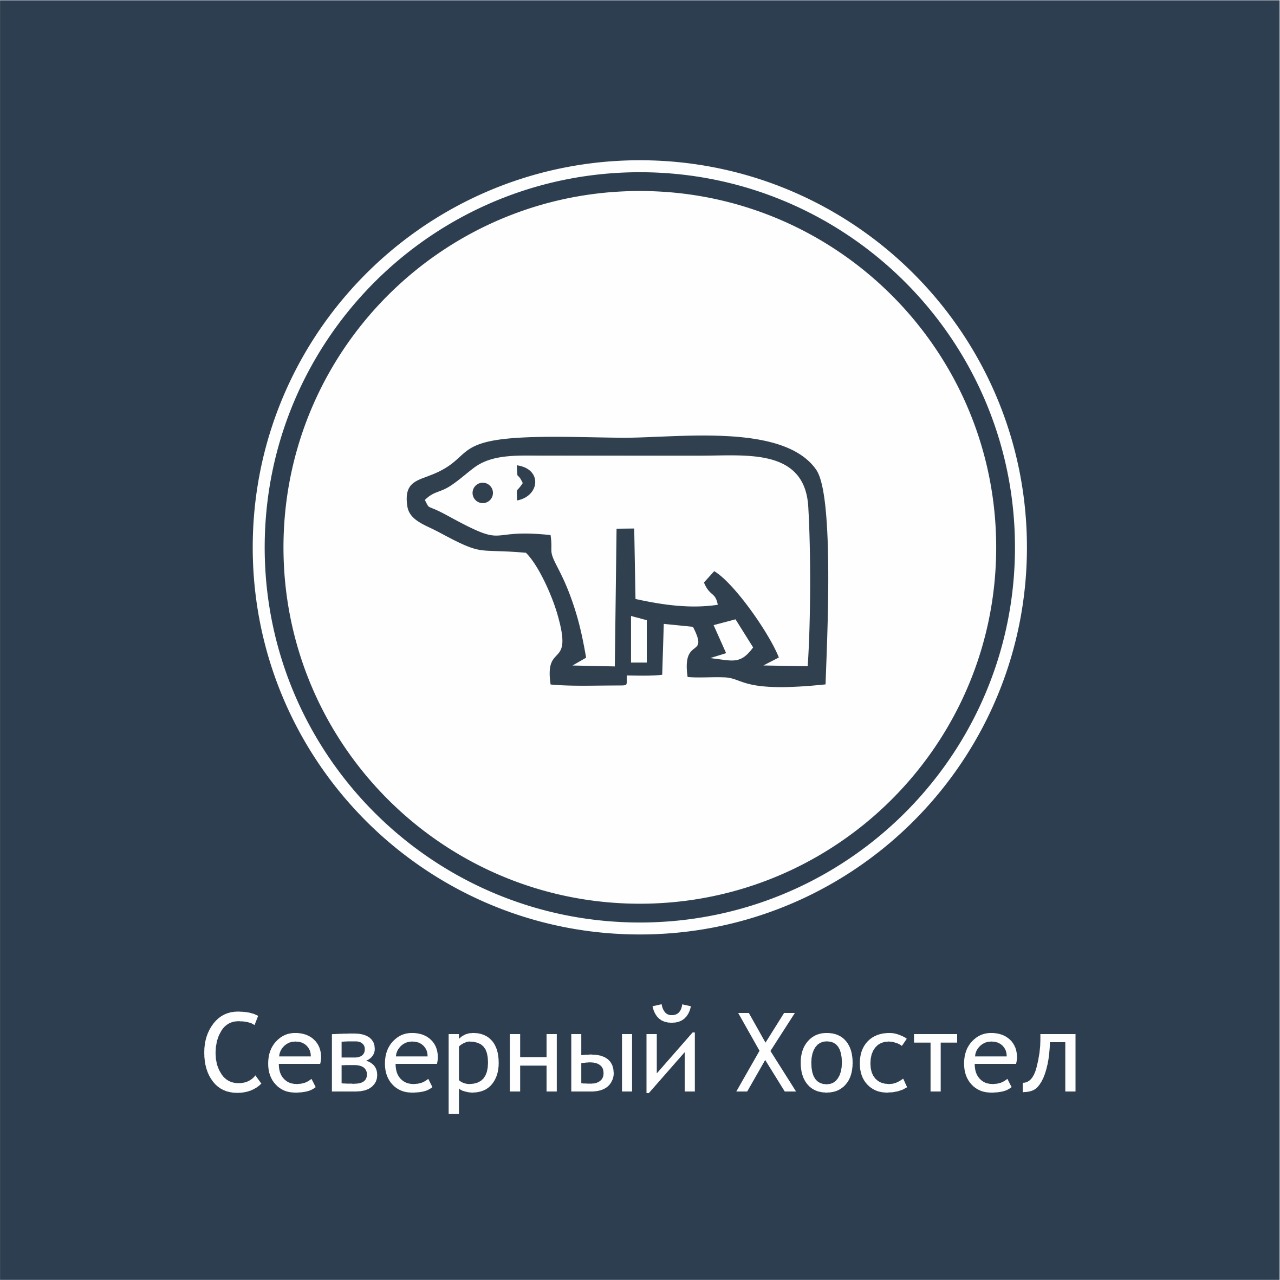 Хостел Северный Санкт-Петербург. Северный 18/1 СПБ. Логотип хостела Барч.